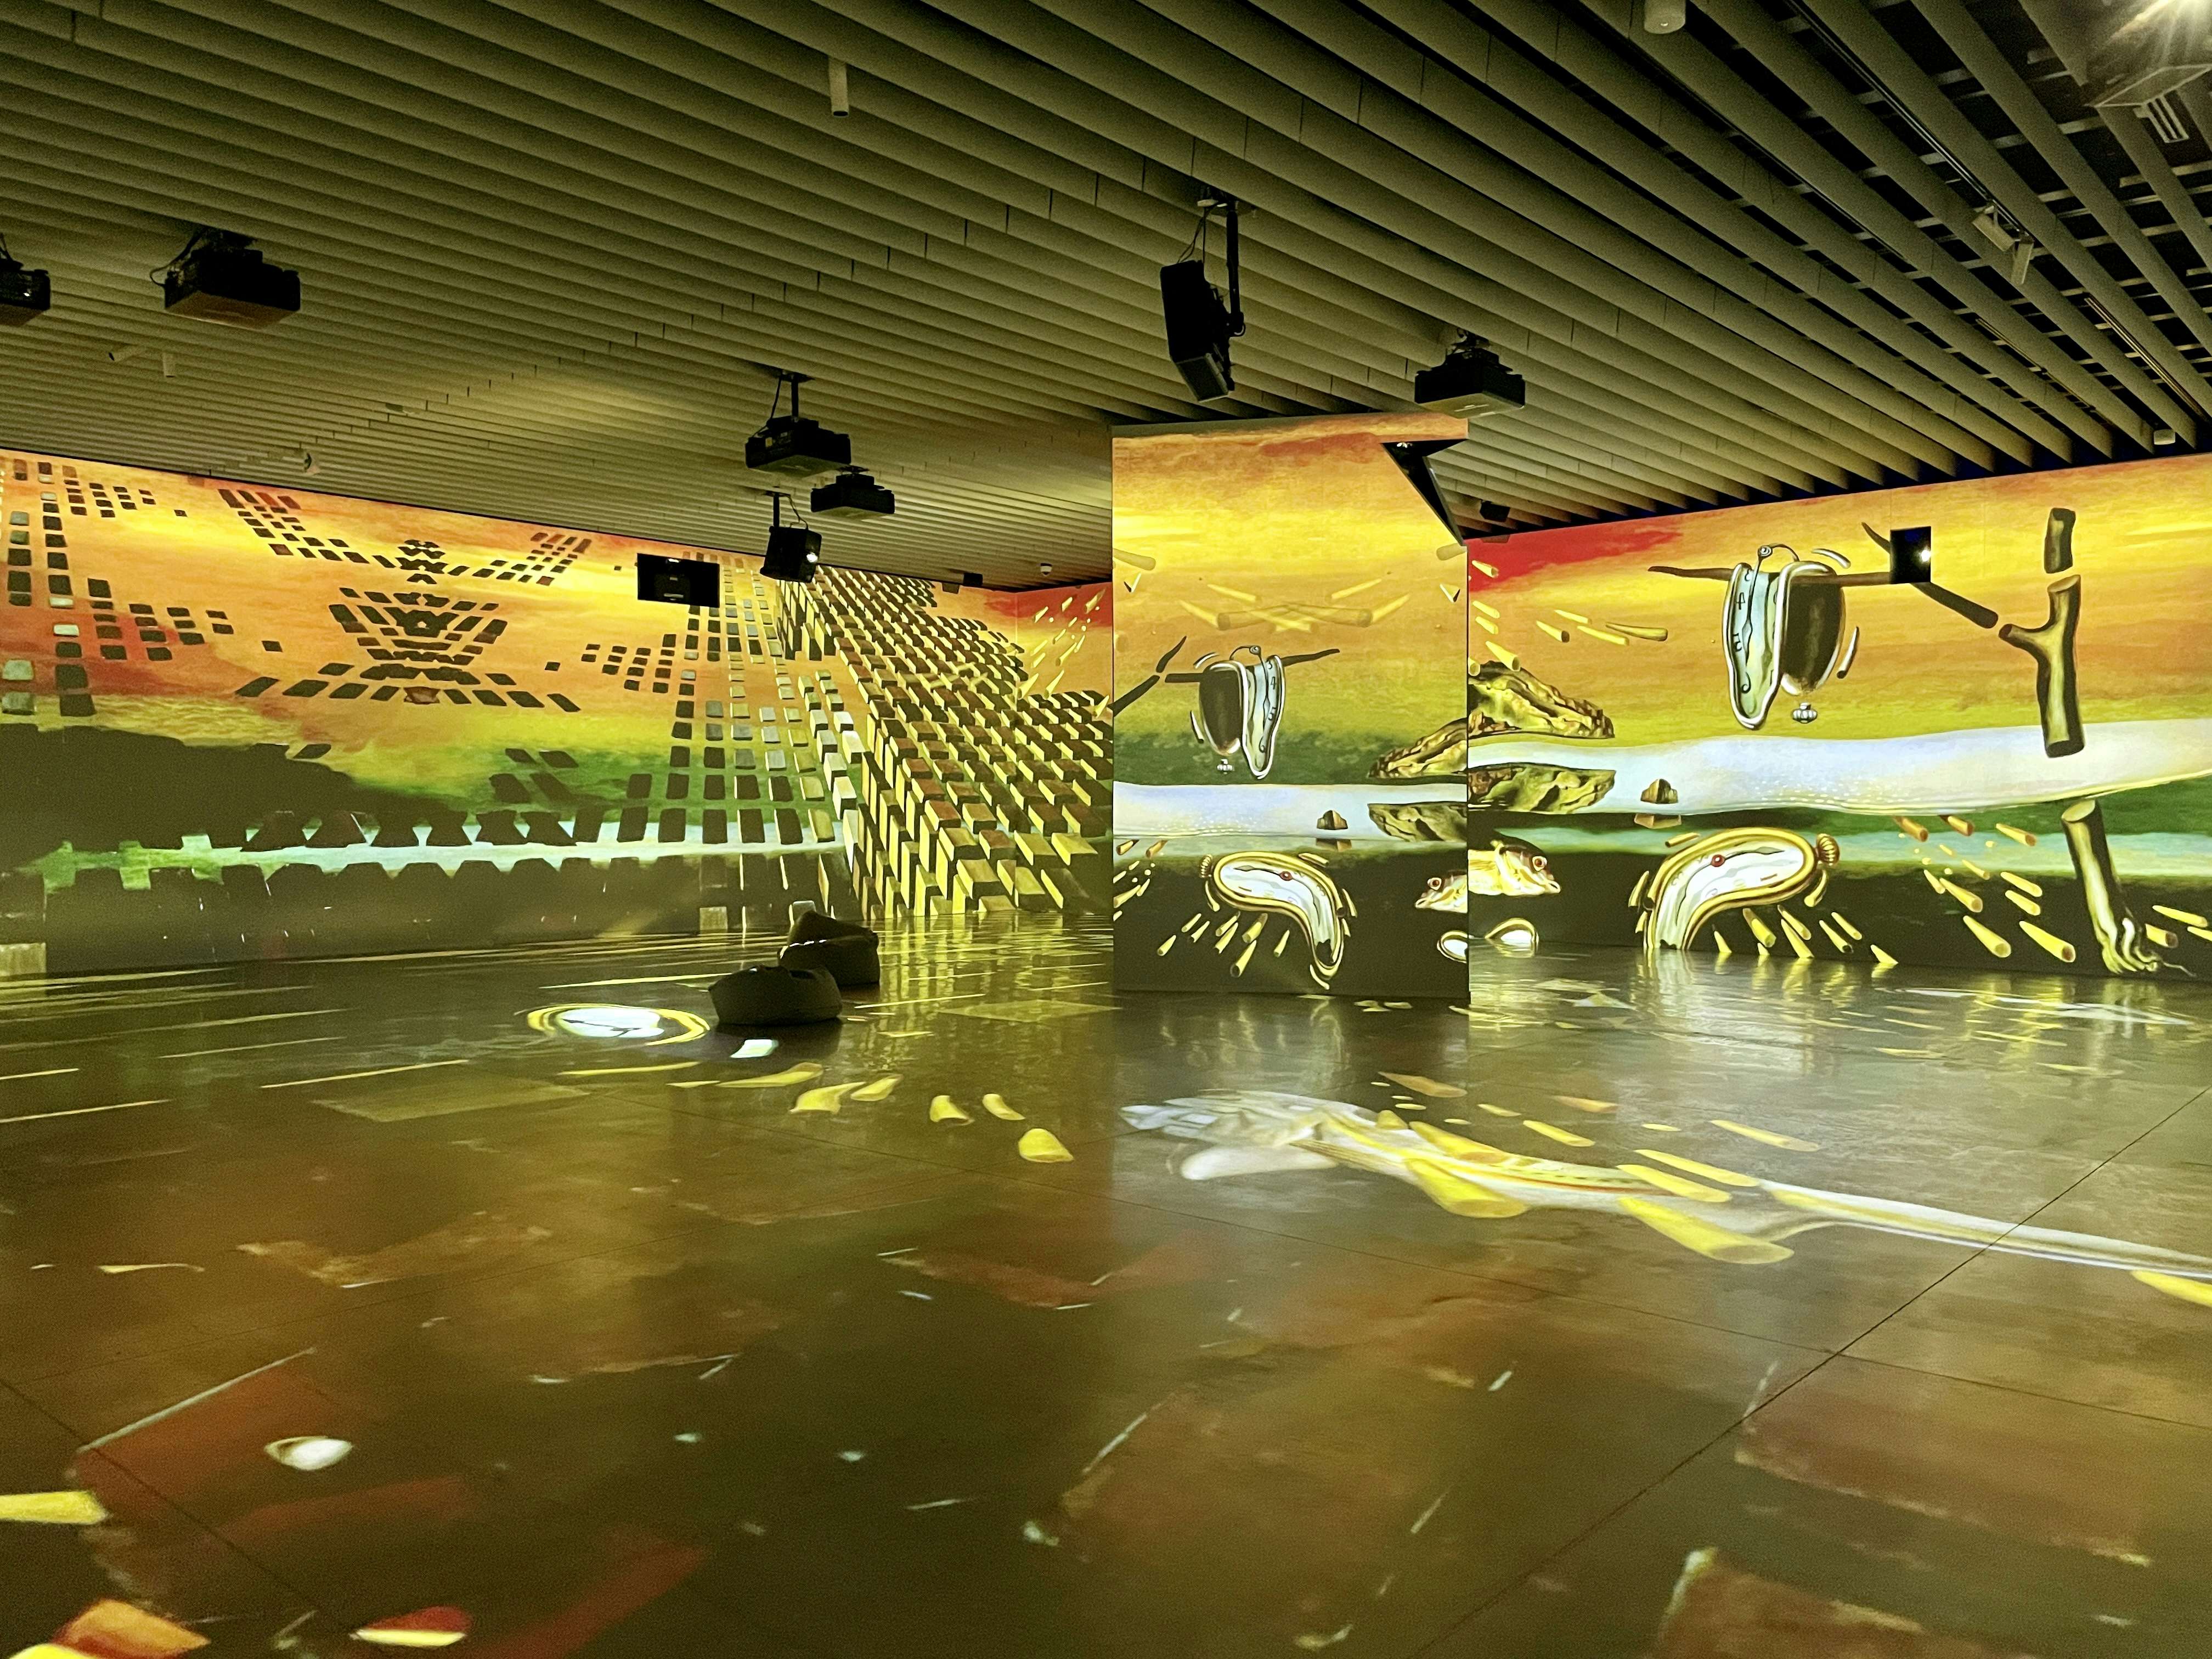 360度の巨大映像空間でダリ芸術の本質に迫る。角川武蔵野ミュージアムで没入型展覧会がスタート｜美術手帖